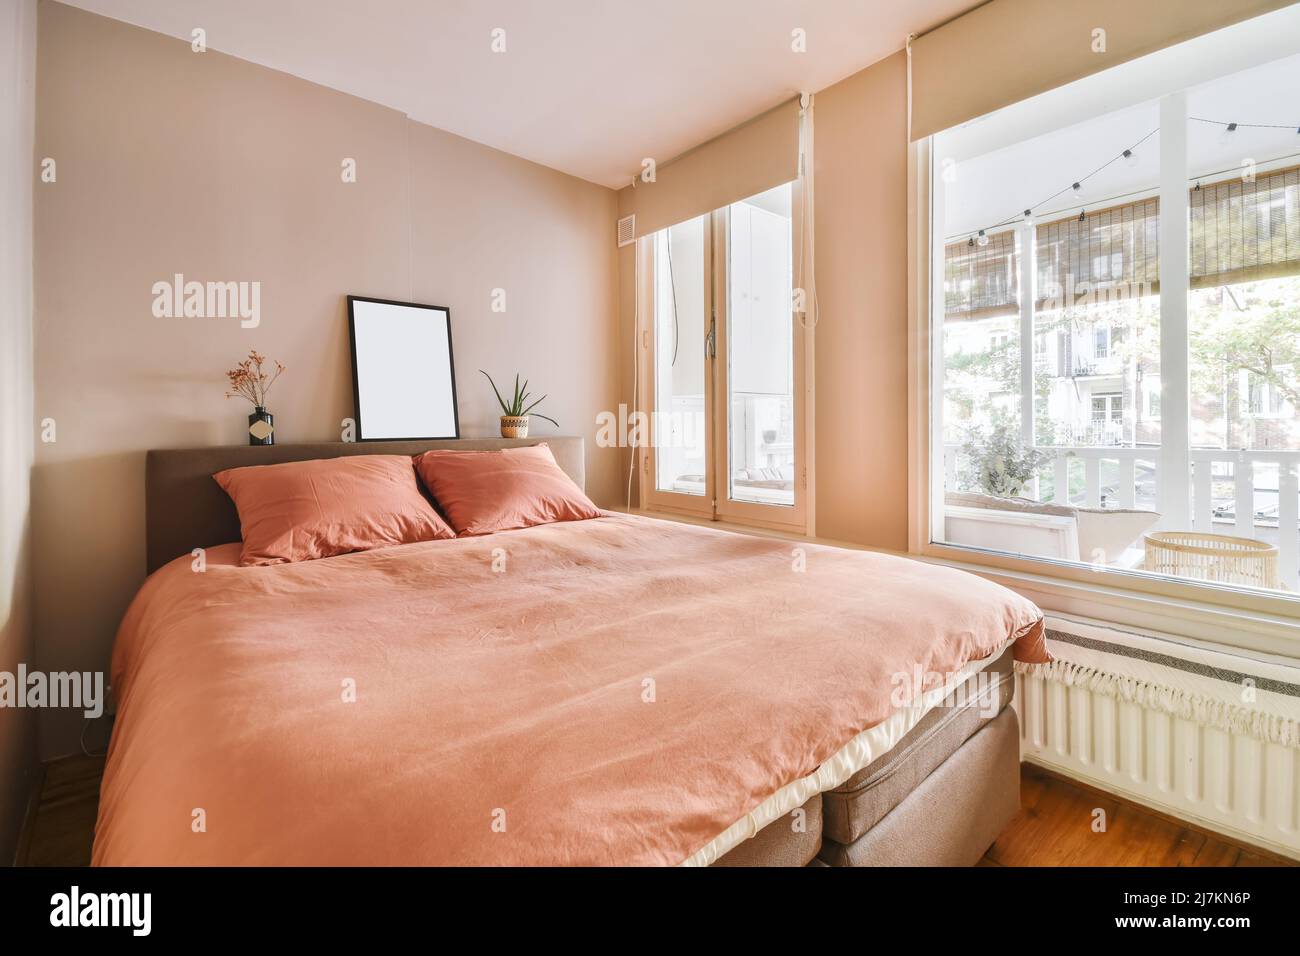 Komfortables weiches Bett mit Kissen und Decke, das in einem modernen Schlafzimmer in einem hellen Apartment neben den Fenstern platziert wurde Stockfoto